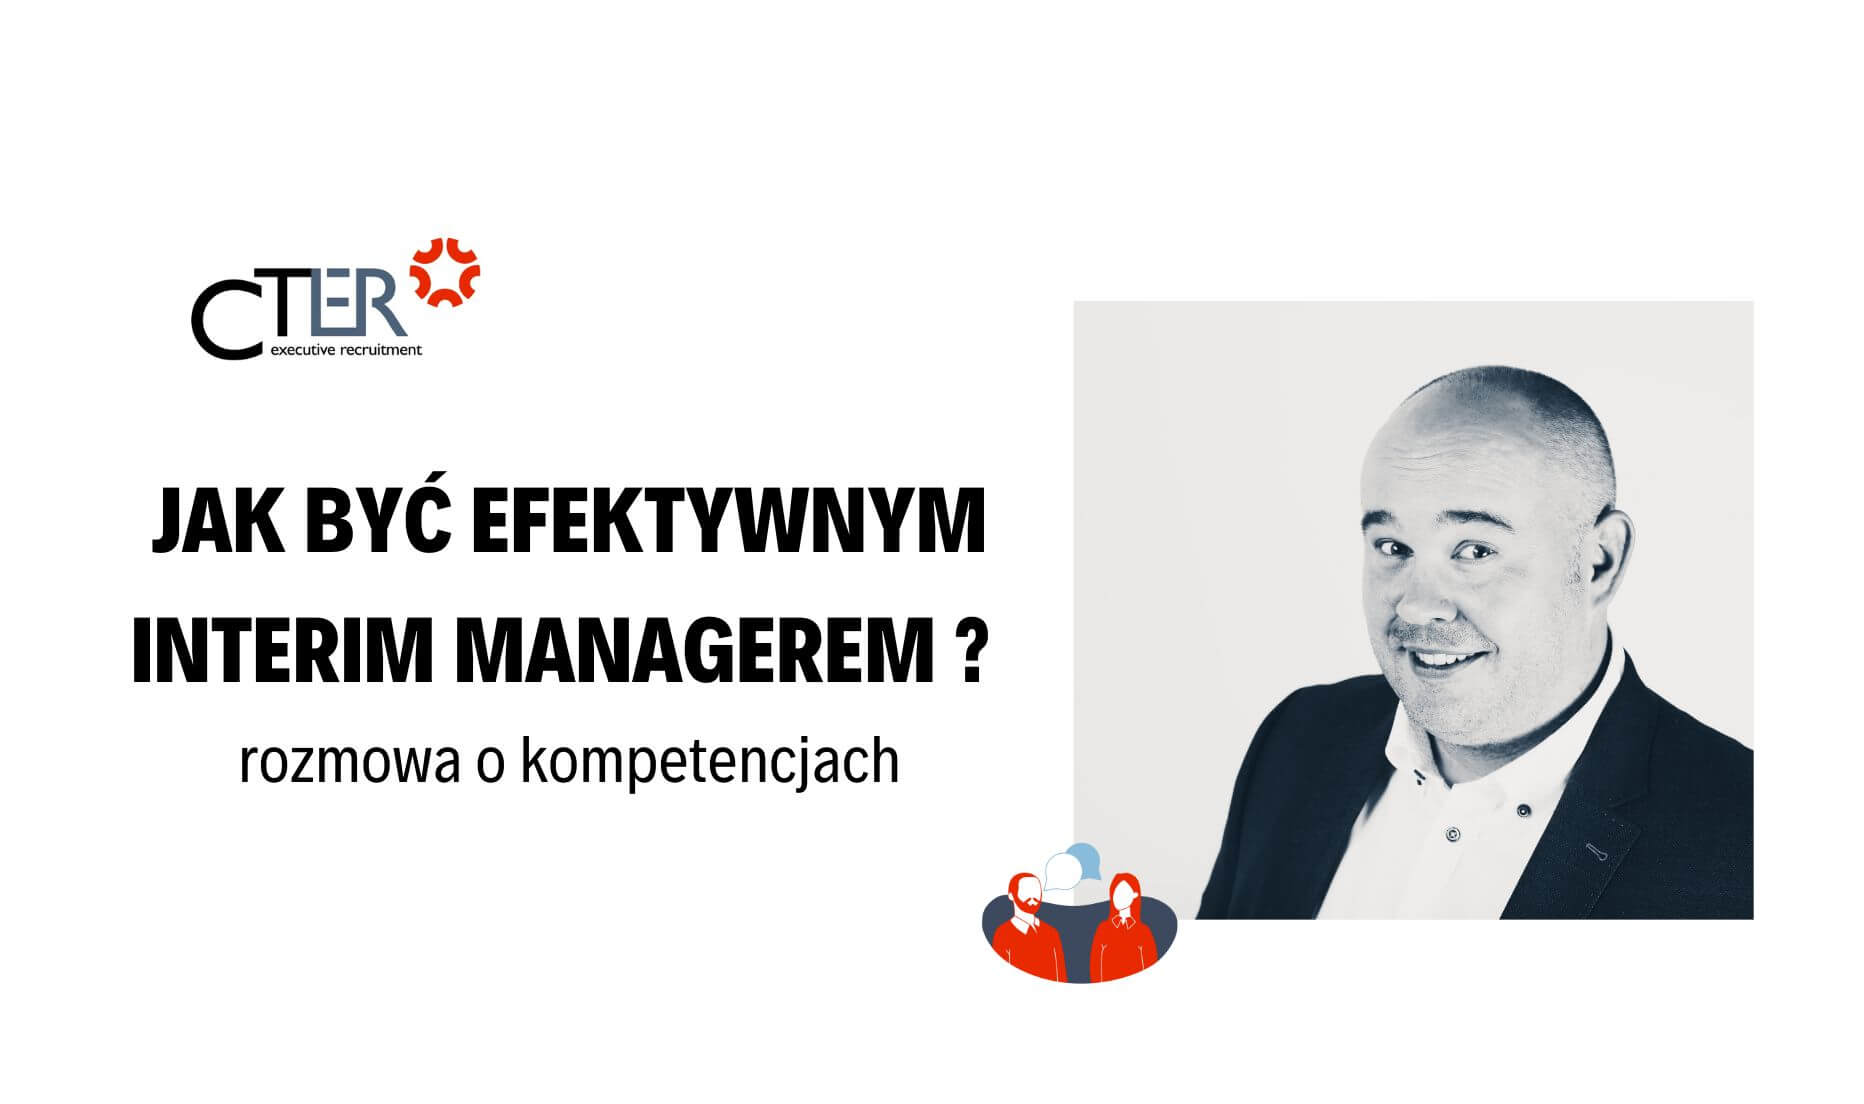 Kluczowe kompetencje Interim Managera – wywiad z Wiesławem Karpowiczem